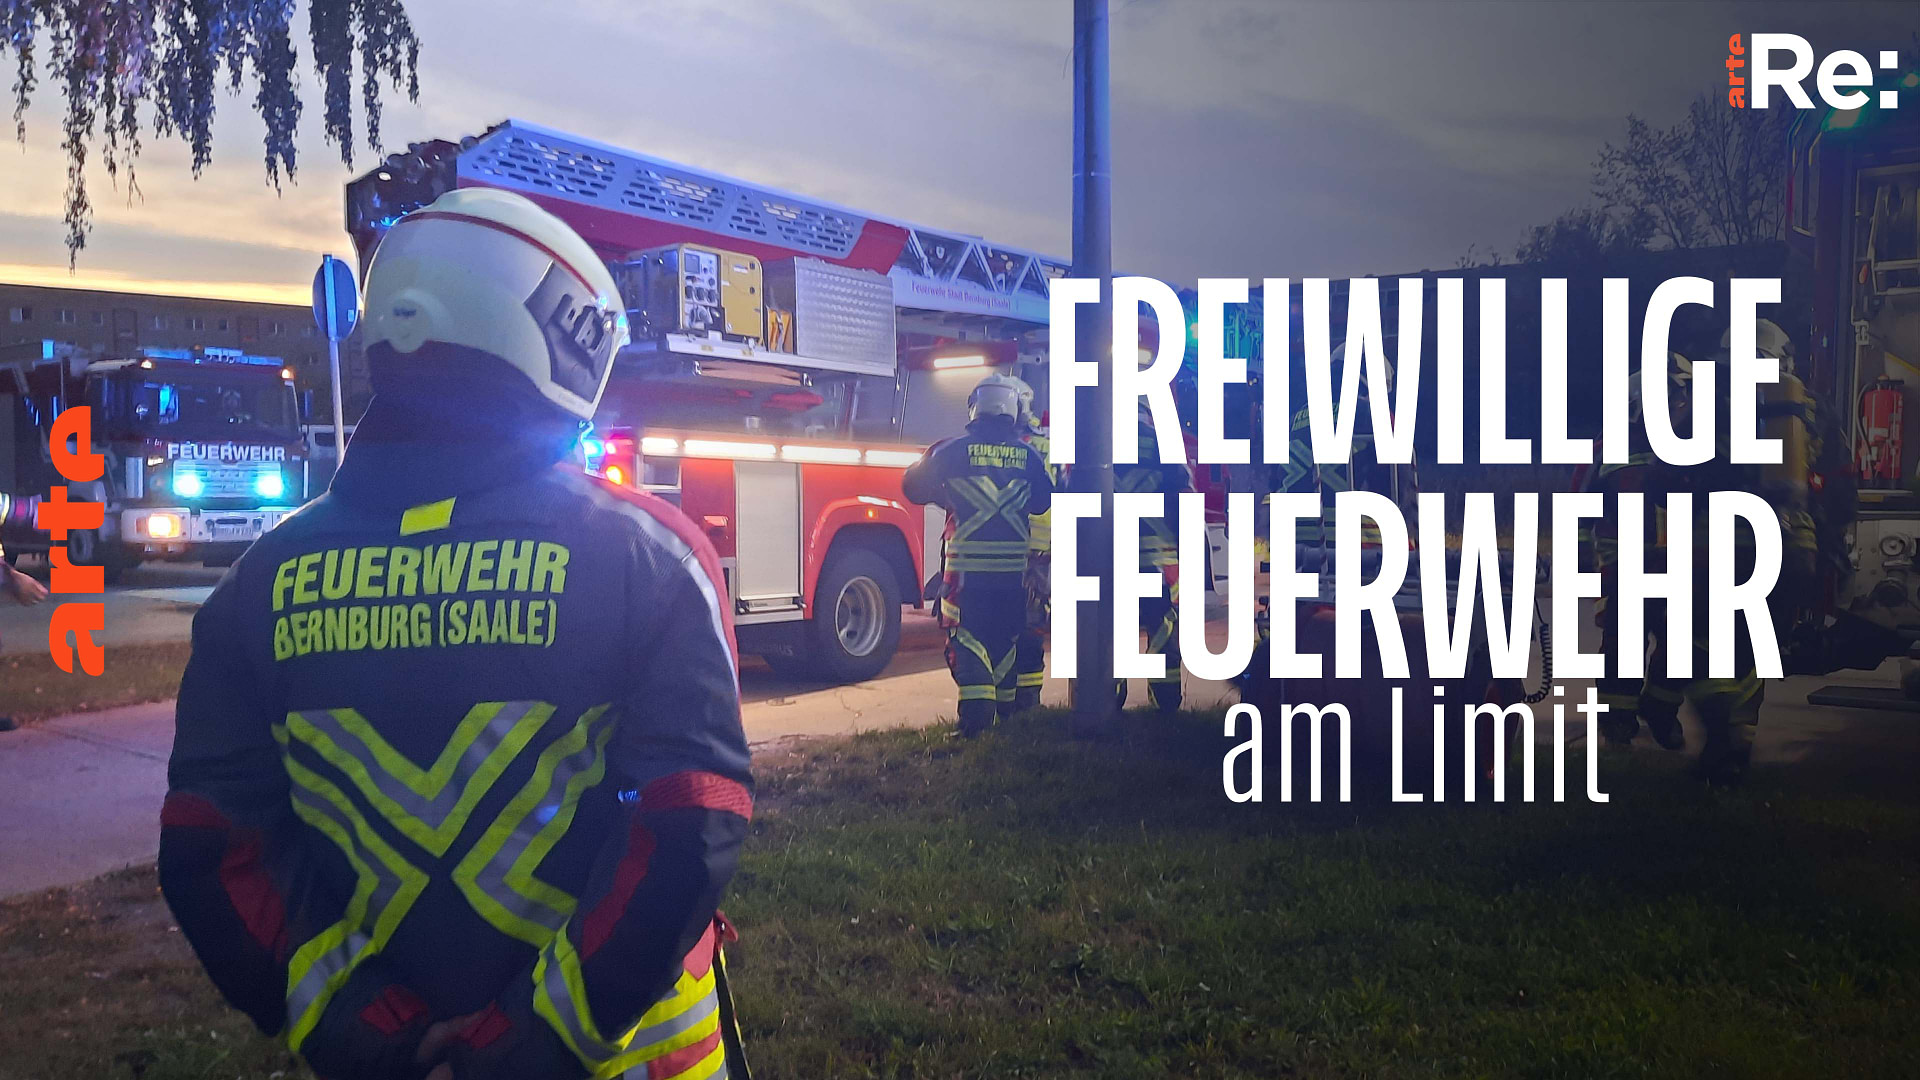 Re: Freiwillige Feuerwehr am Limit